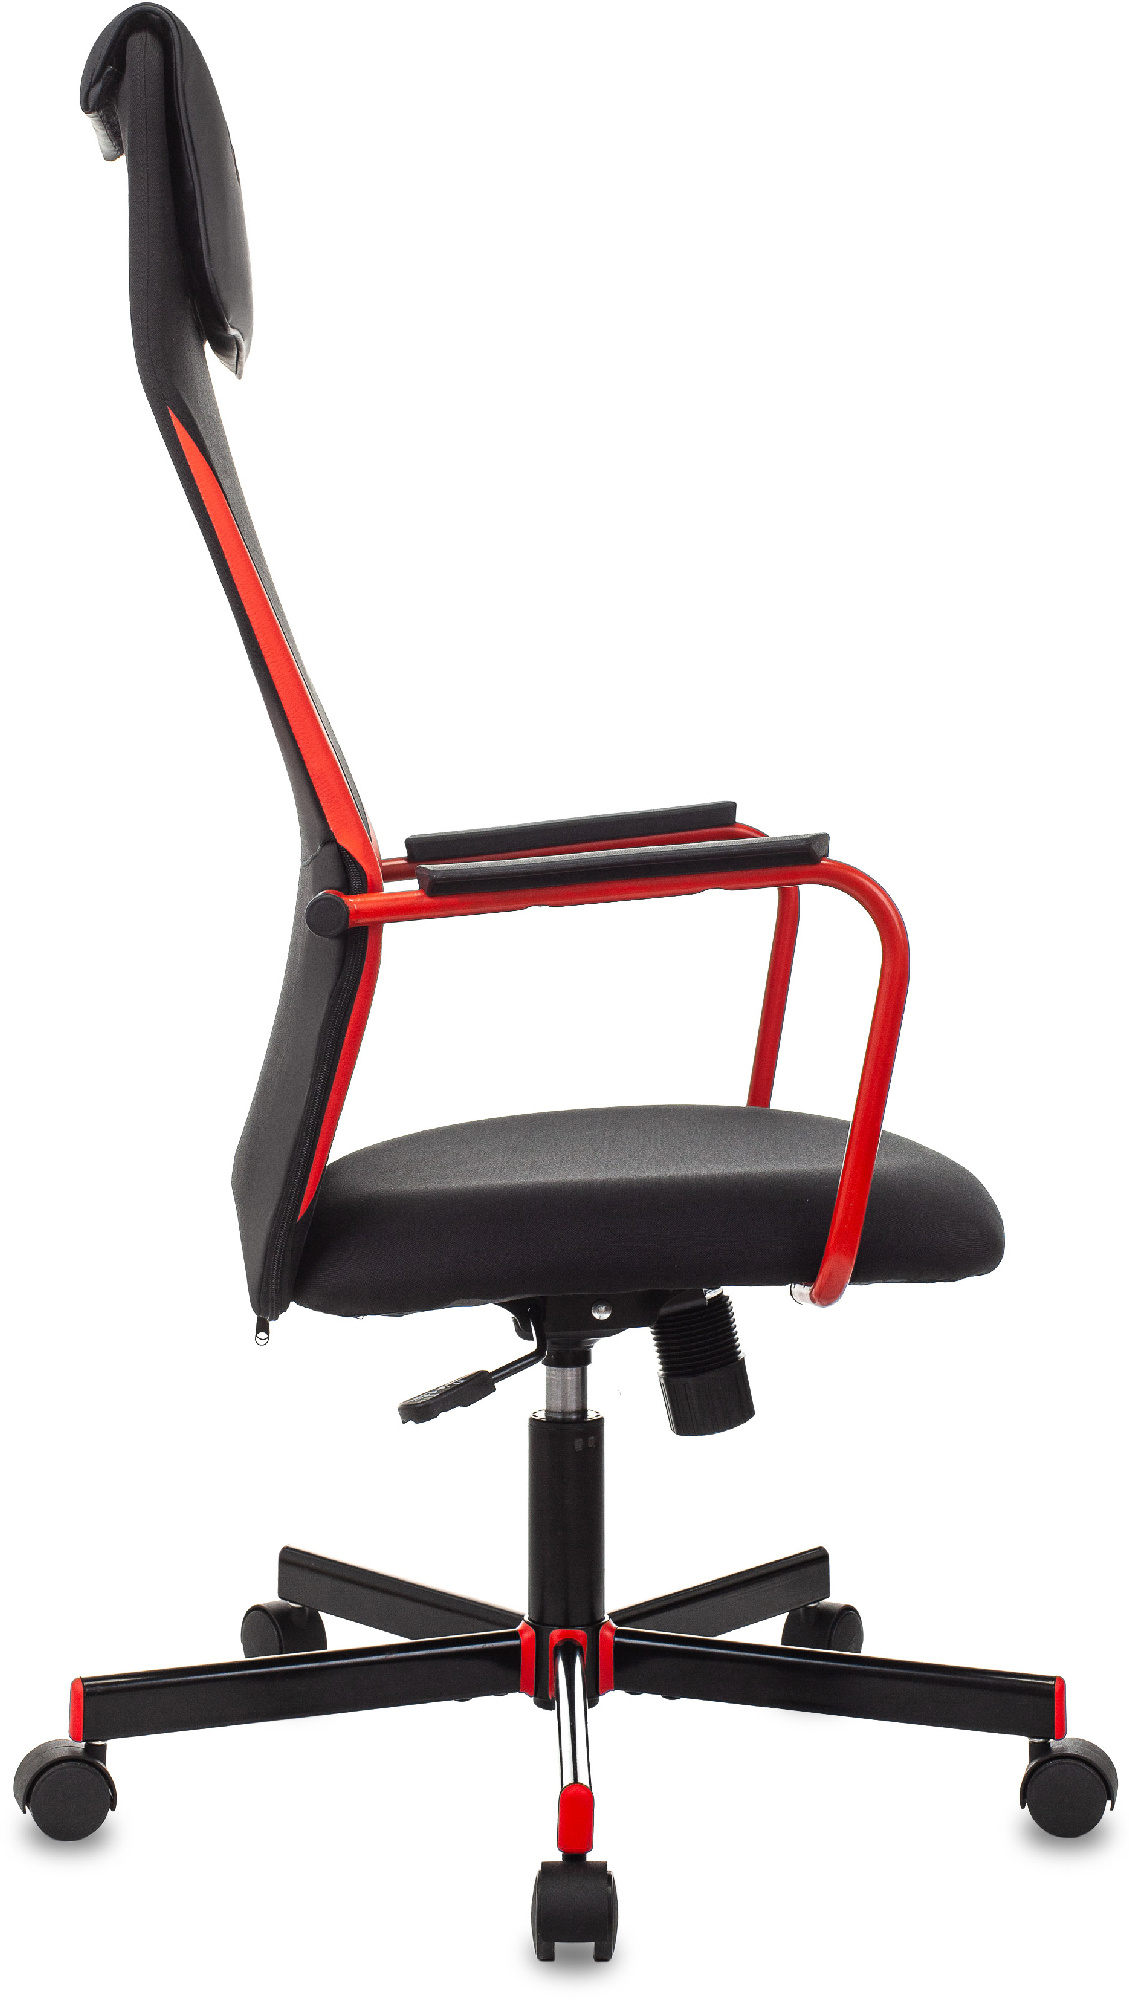 Кресло игровое Zombie ONE черный/красный сиденье черный текстиль/эко.кожа с подголов. крестов. металл